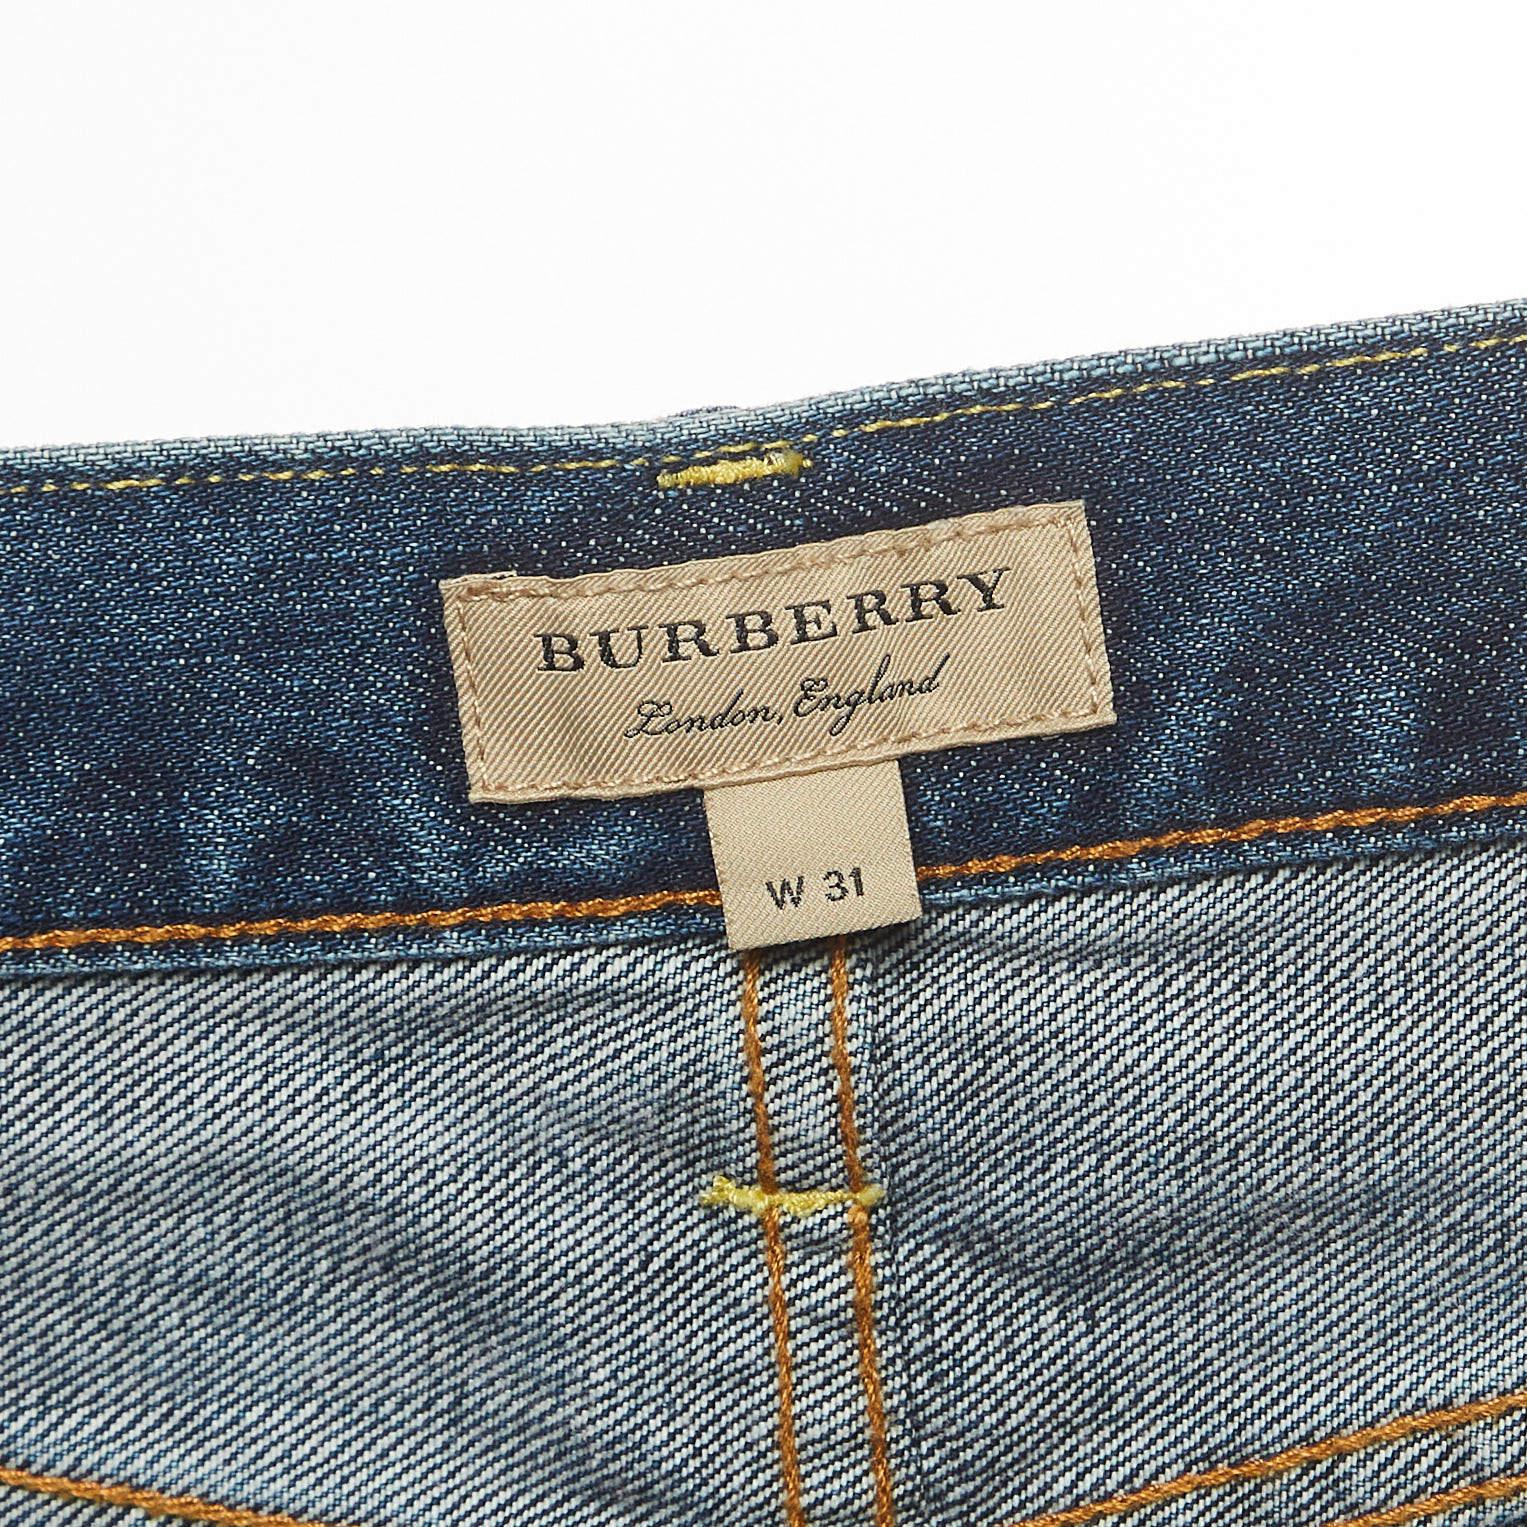 Burberry Jeans droit ajusté taille L 31